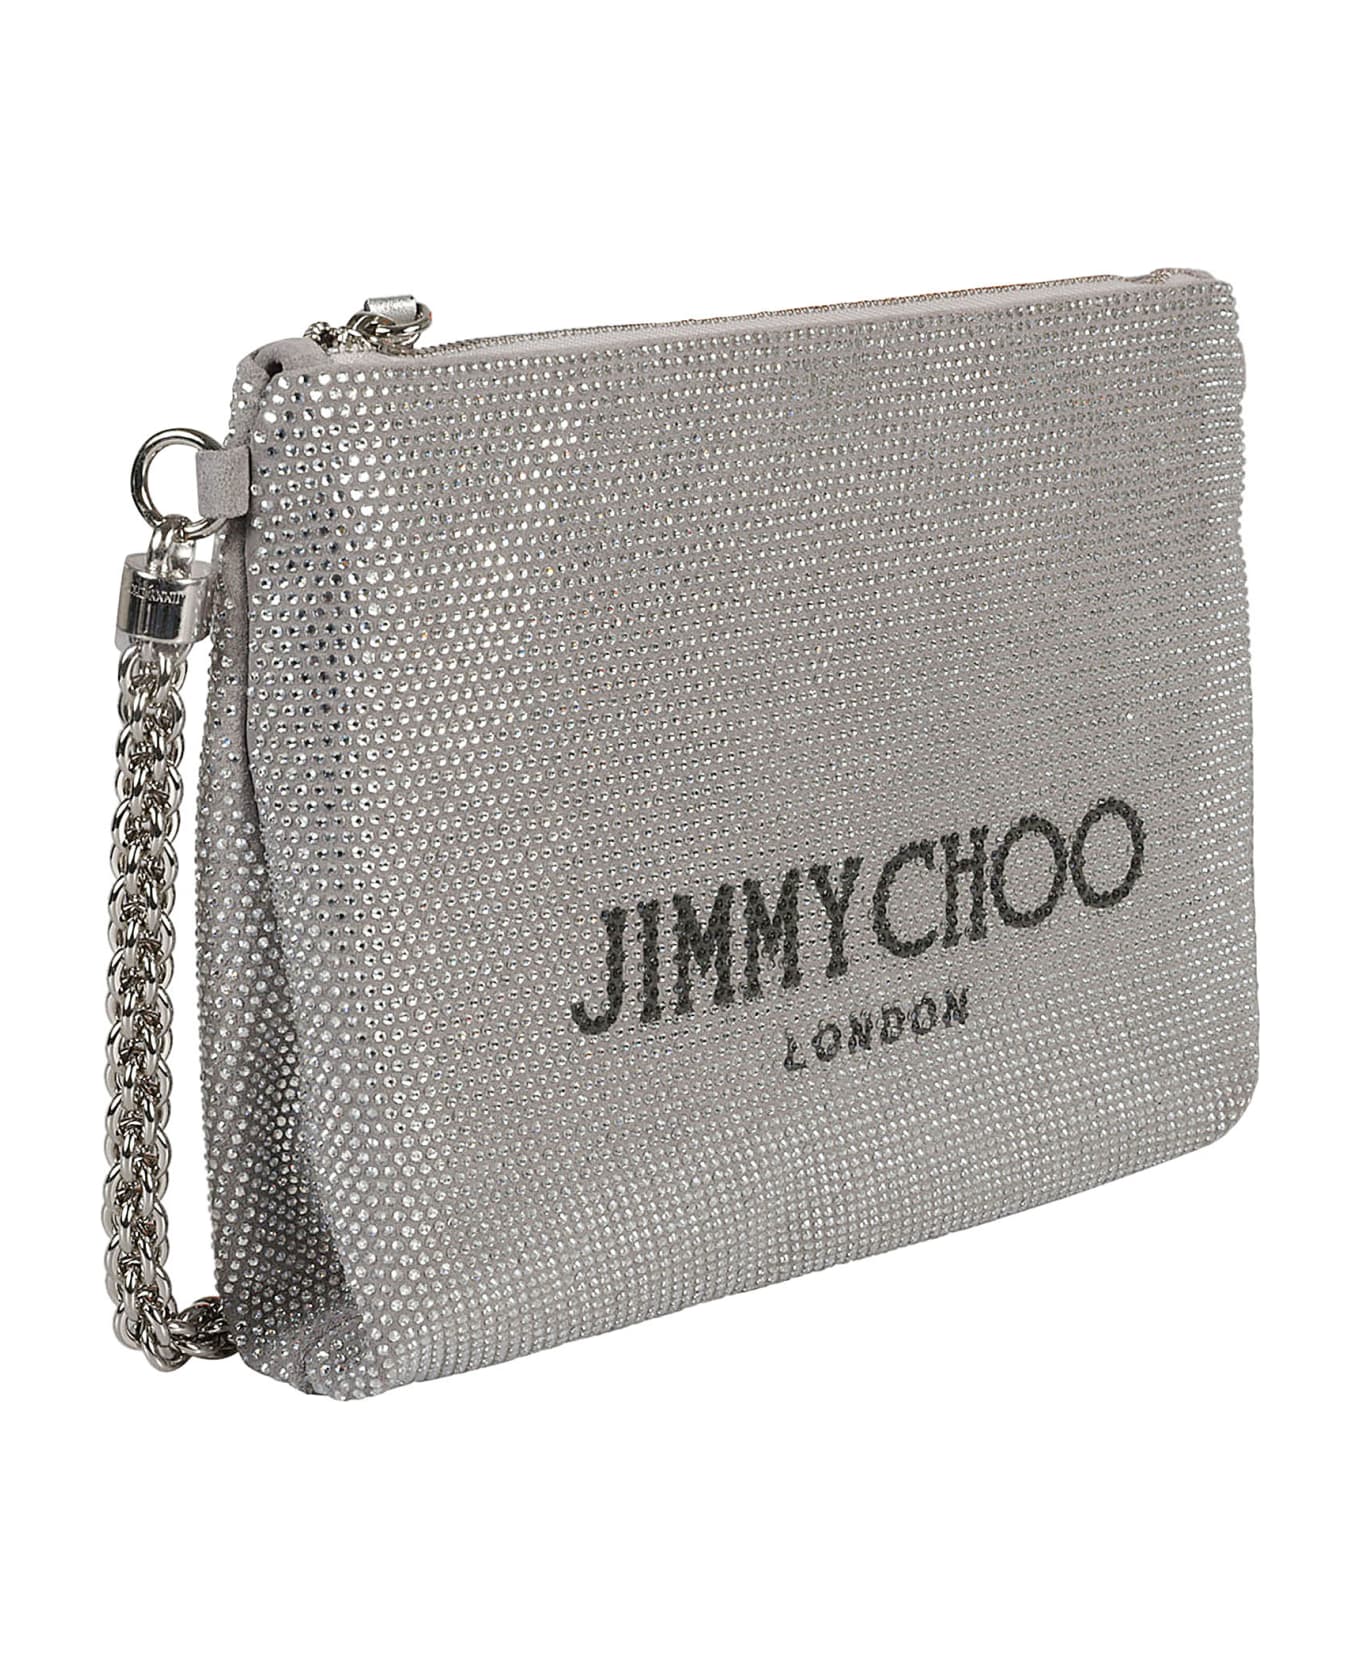 Jimmy Choo Calle Shoulder Bag - Silver/Black